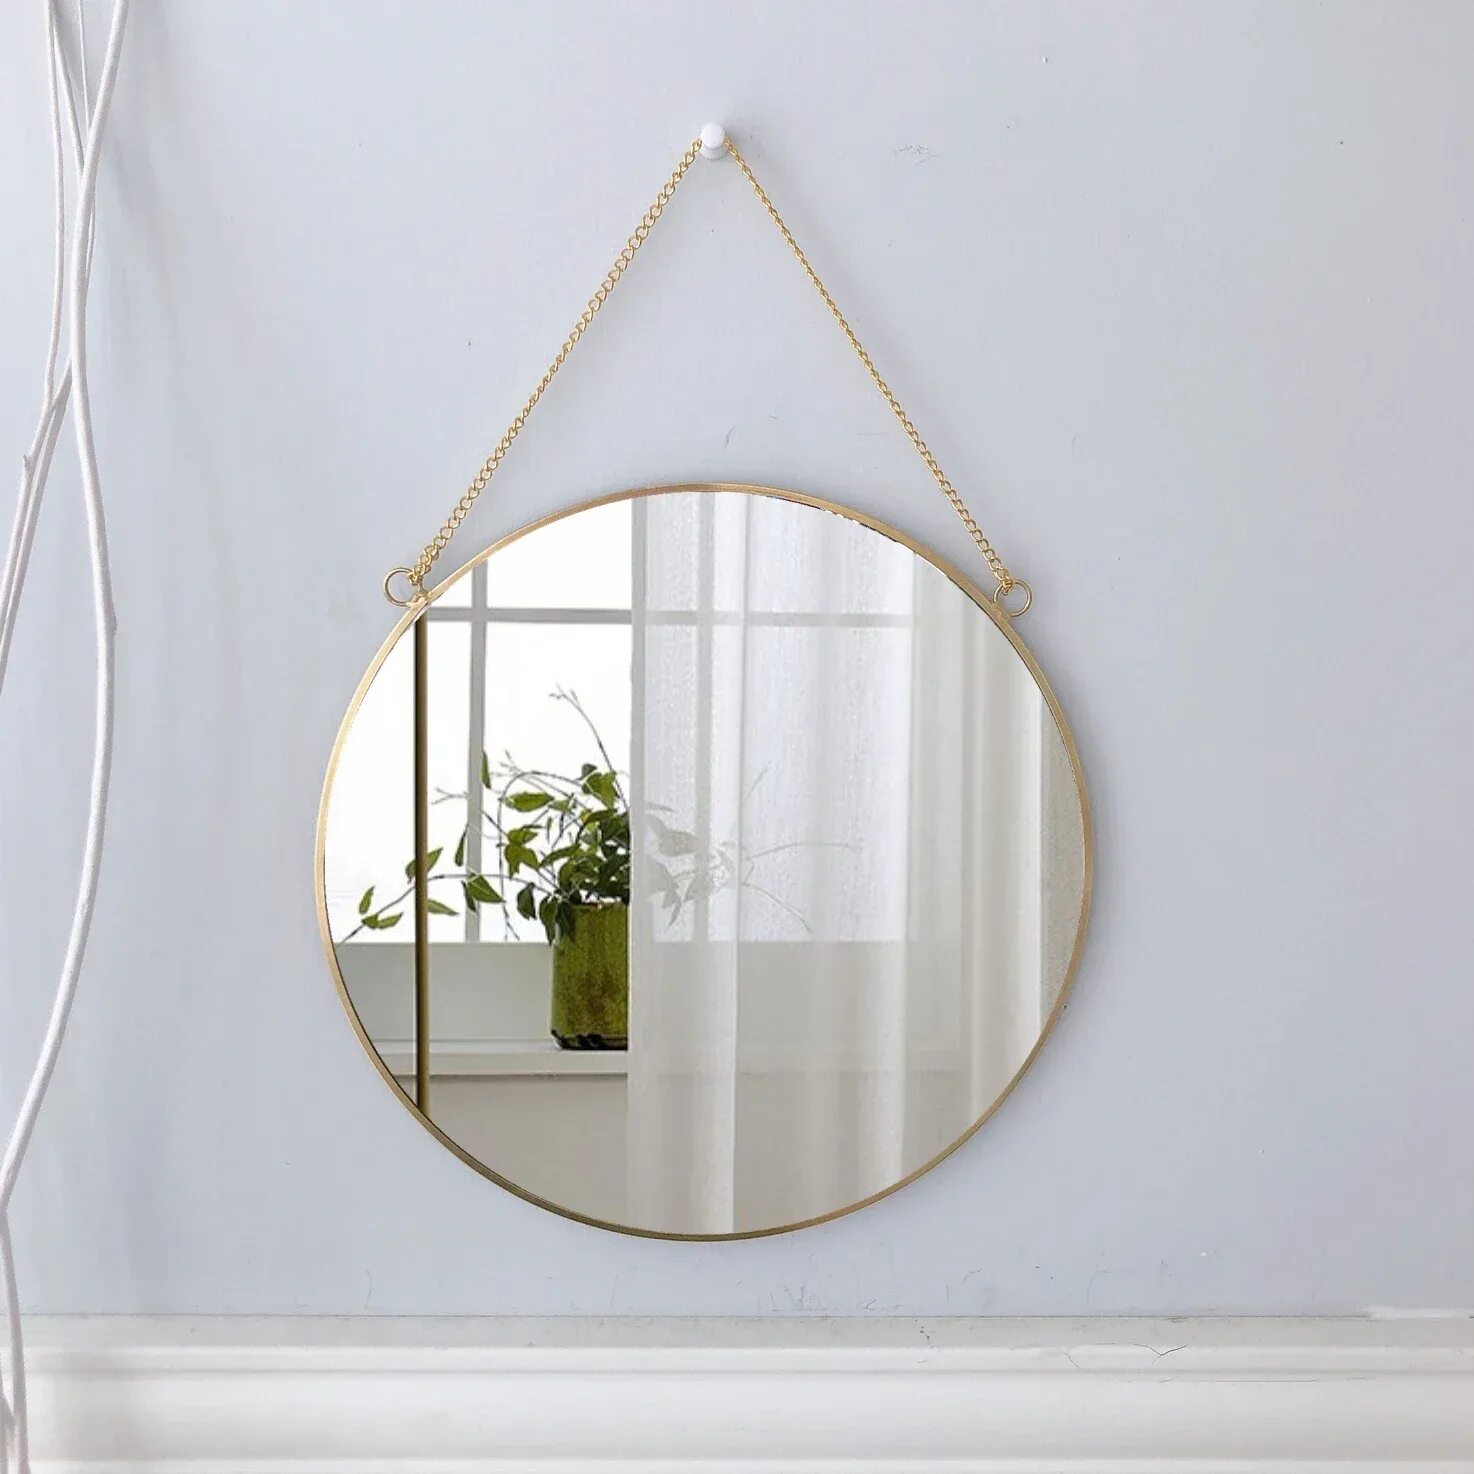 Подвесное зеркало для ванной. Зеркало подвесное. Зеркало круглое на веревке. Зеркало круглое. Зеркало круглое подвесное.